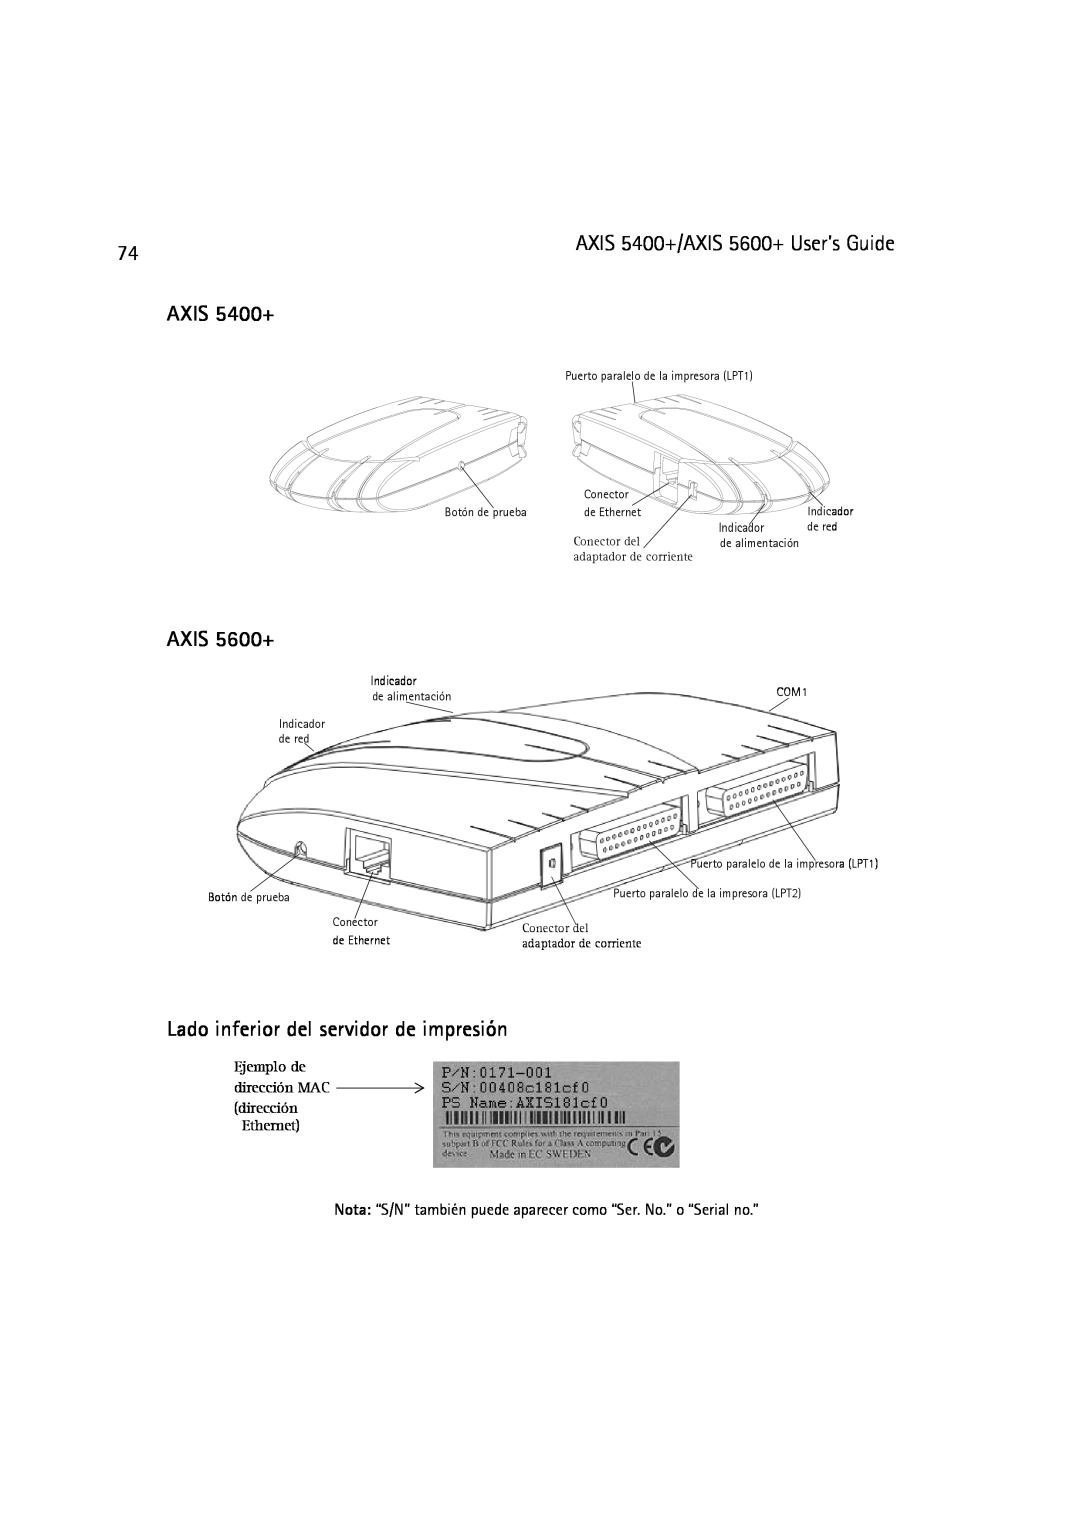 Dell manual Lado inferior del servidor de impresión, AXIS 5400+/AXIS 5600+ User’s Guide, Indicador 